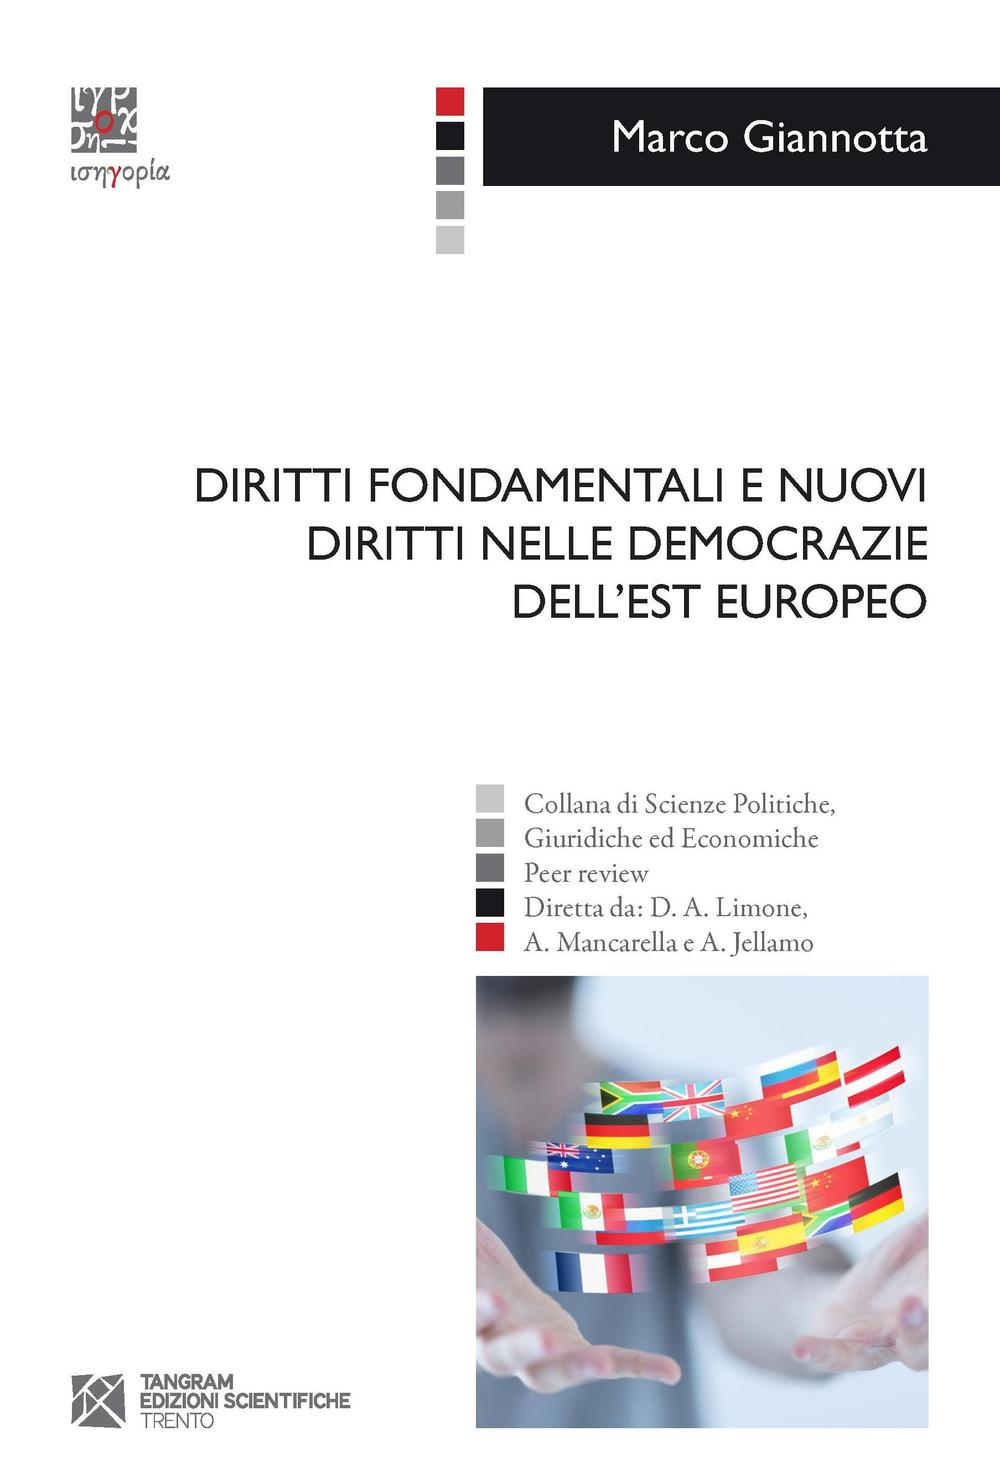 Image of Diritti fondamentali e nuovi diritti nelle democrazie dell'Est europeo